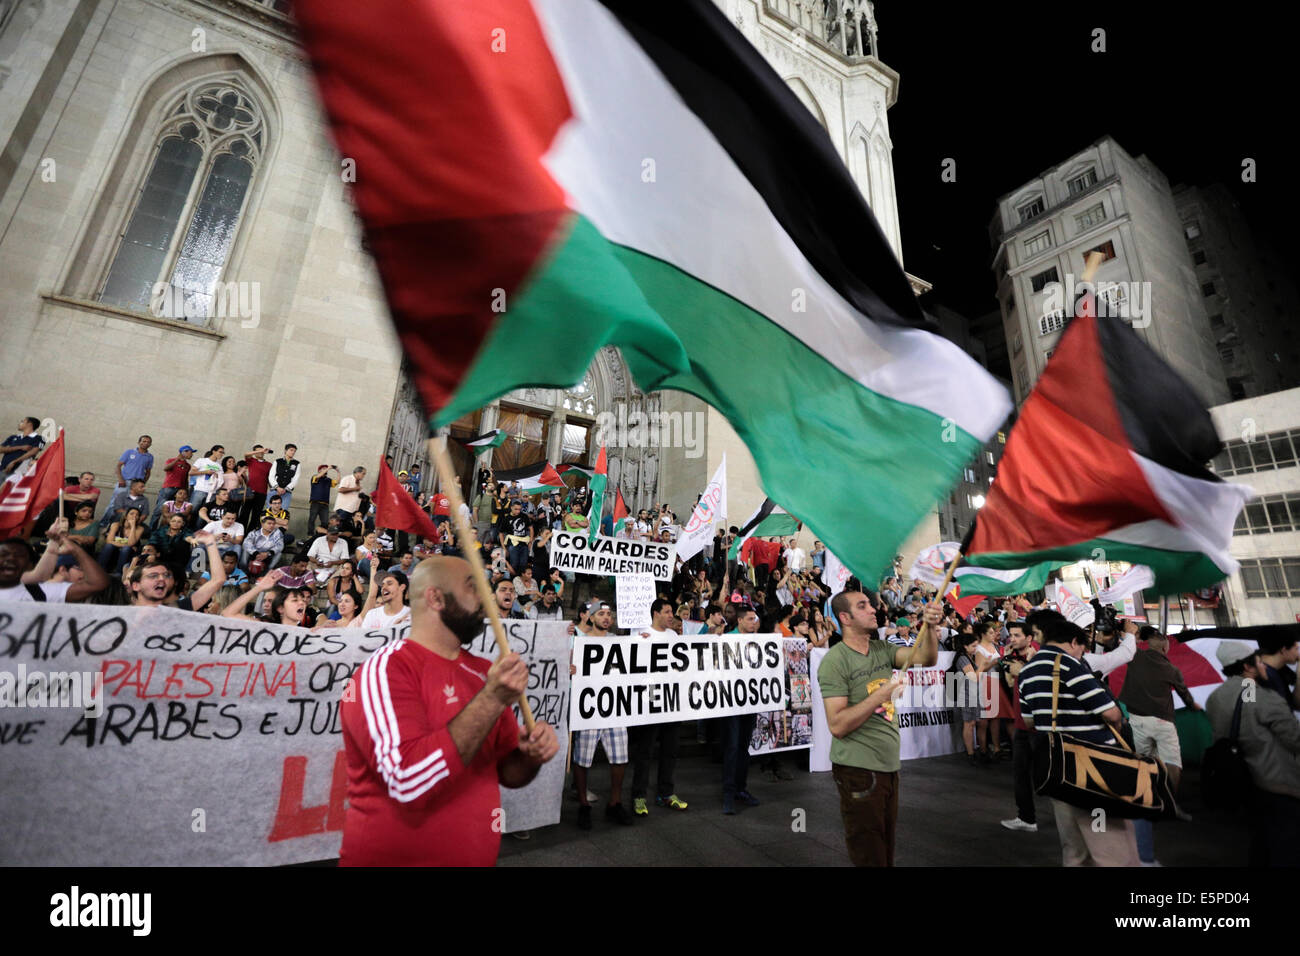 La bandera palestina recorre Sudamérica! 🇵🇸 🤩 ¡Gracias por el